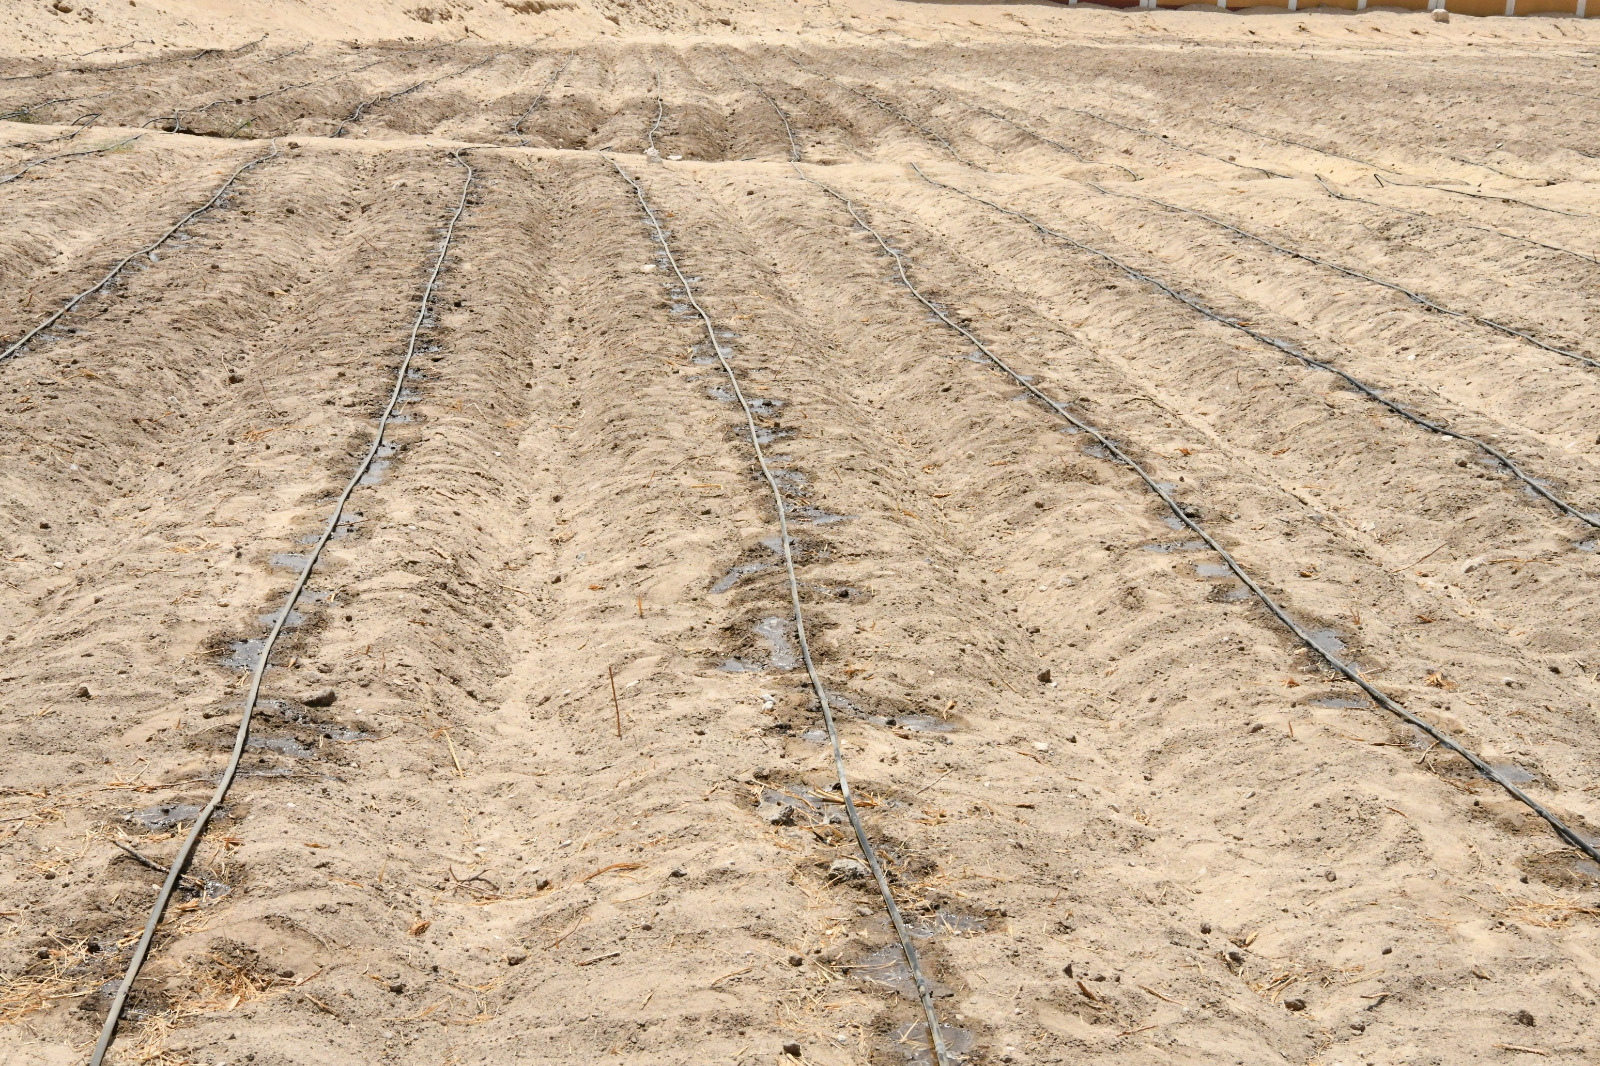 بدء استصلاح وزراعة 400 فدان بمحاصيل فول الصويا والبرسيم لإنتاج الأعلاف في قنا